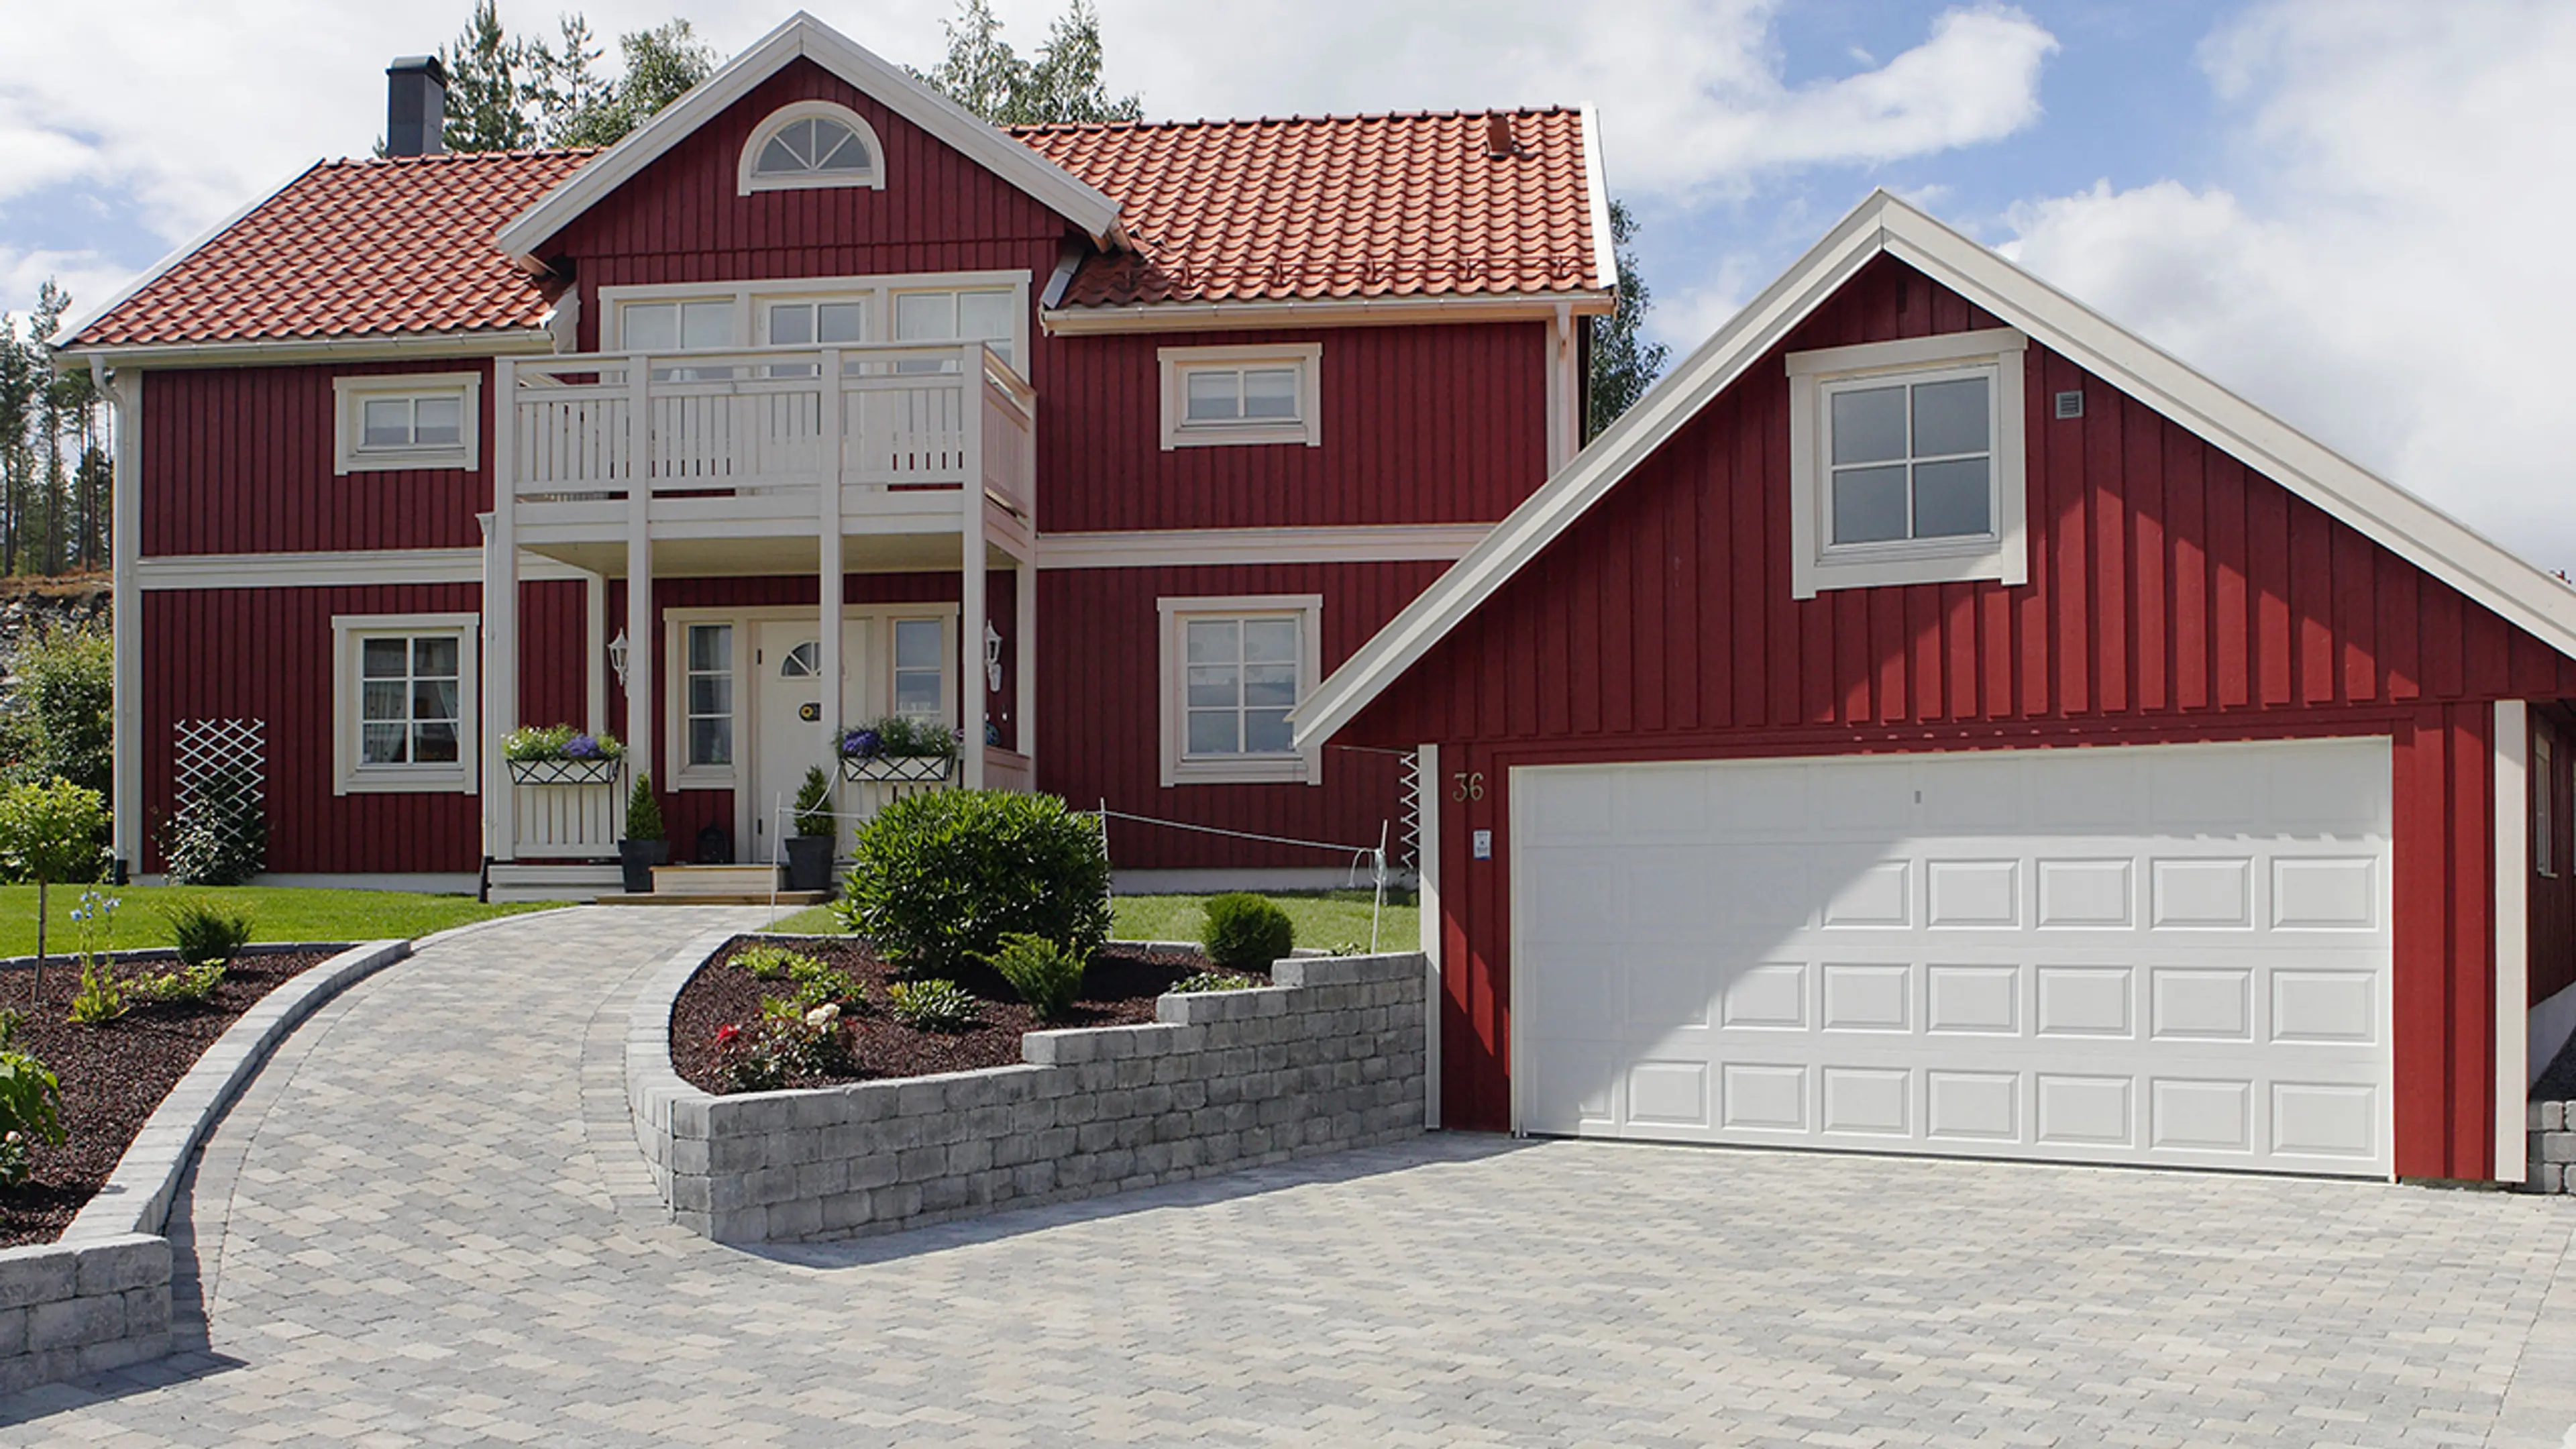 Rødt hus og garasje med belegningsstein i innkjørselen.